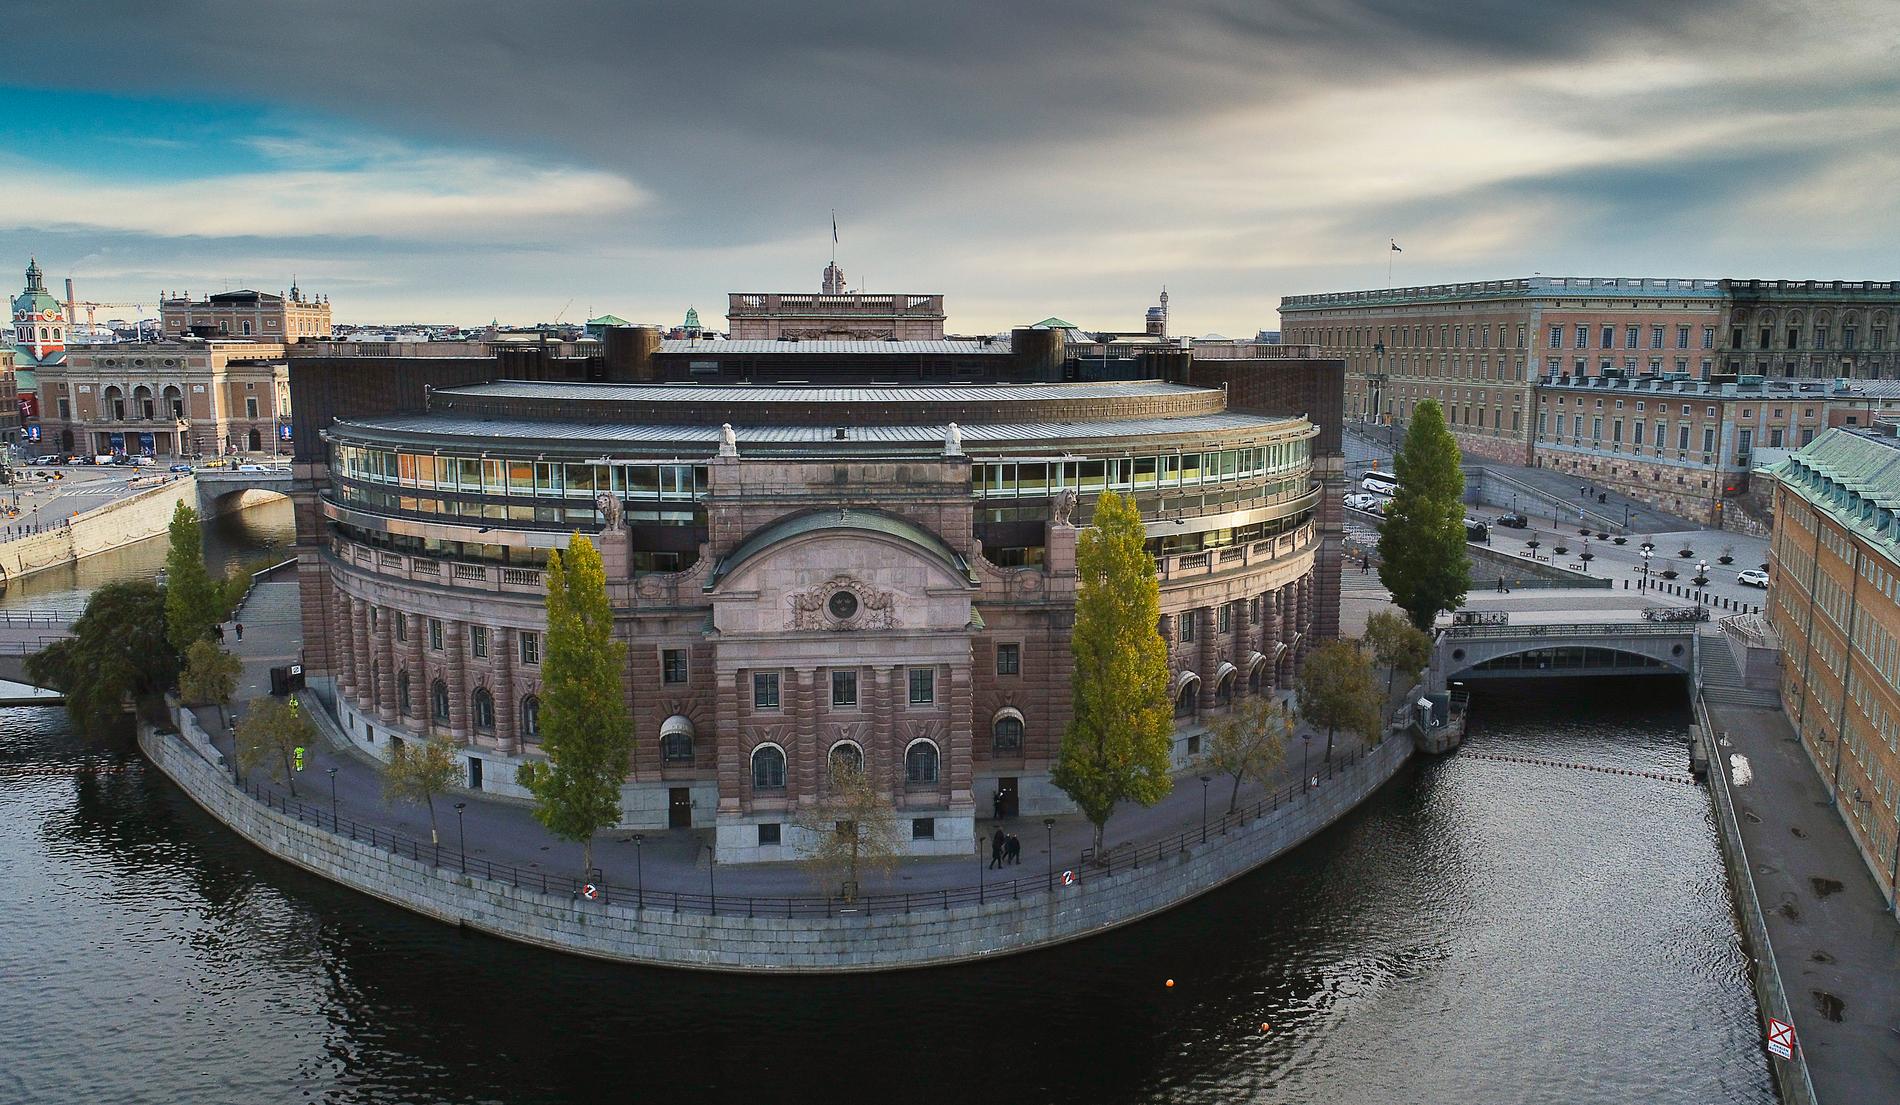 Riksdagshuset på Helgeandsholmen i Stockholm. Arkivbild.